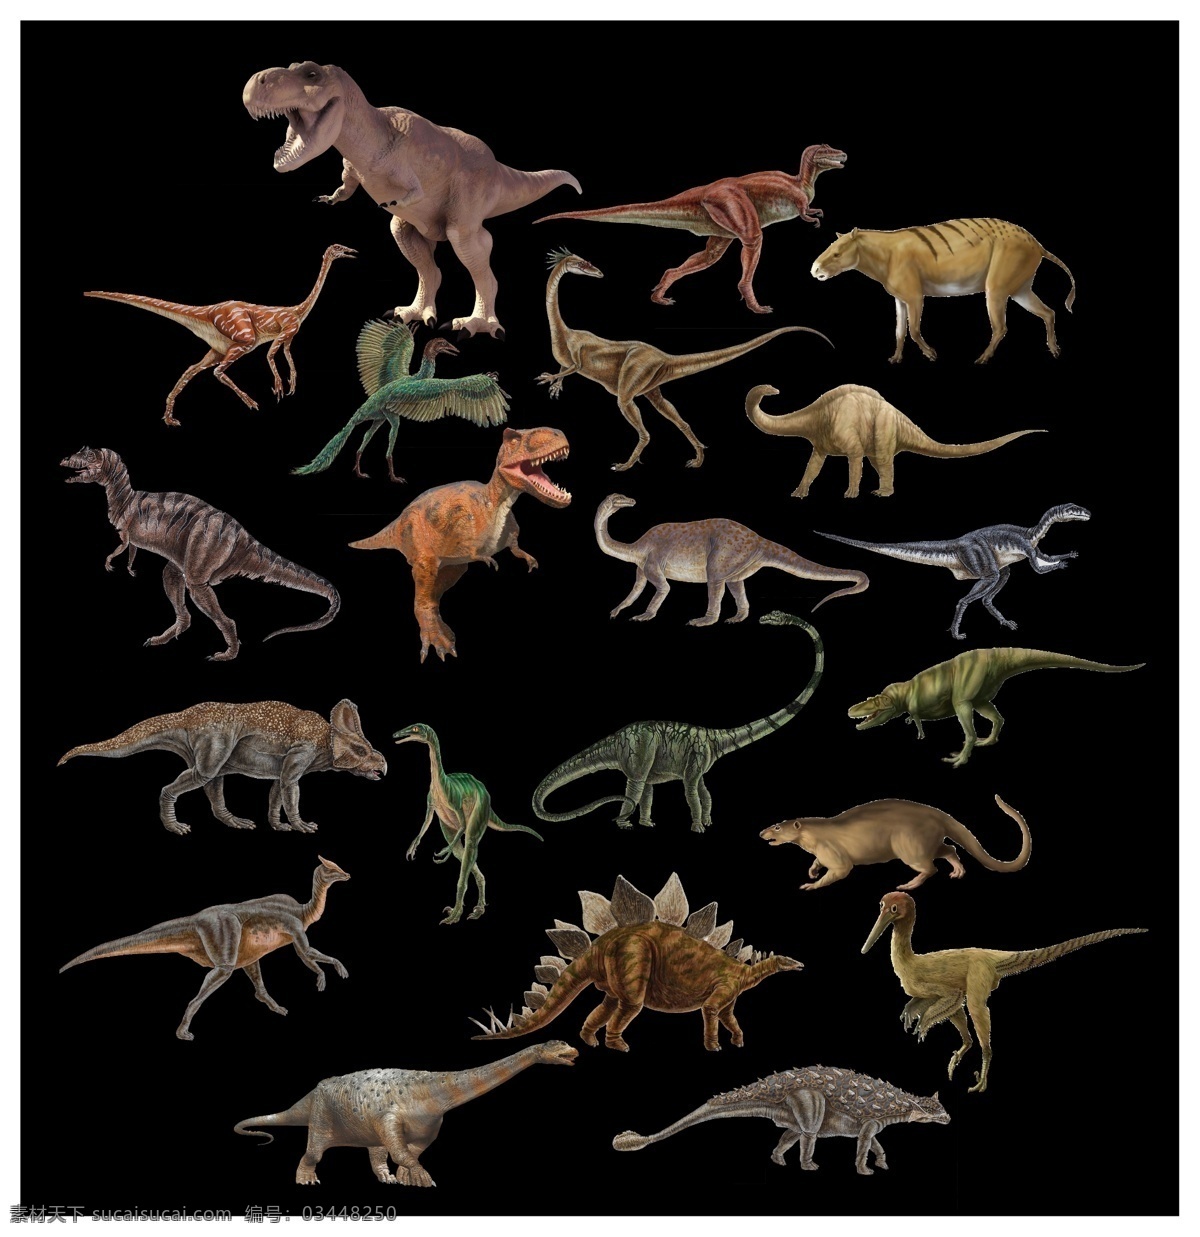 恐龙卡通形象 恐龙形象 剑龙 恐龙世界 恐龙大全 恐龙王国 黑白恐龙 恐龙家族 翼龙 霸王龙 卡通恐龙 矢量恐龙 恐龙素材 各种恐龙 小恐龙 古代动物 远古动物 暴龙 迅猛龙 三角龙 特异龙 恐龙造型 喷火的恐龙 手绘恐龙 恐龙乐园 大连动物园 恐龙蛋 侏罗纪 白垩纪 侏罗纪时代 品牌 馆 杂货铺 分层